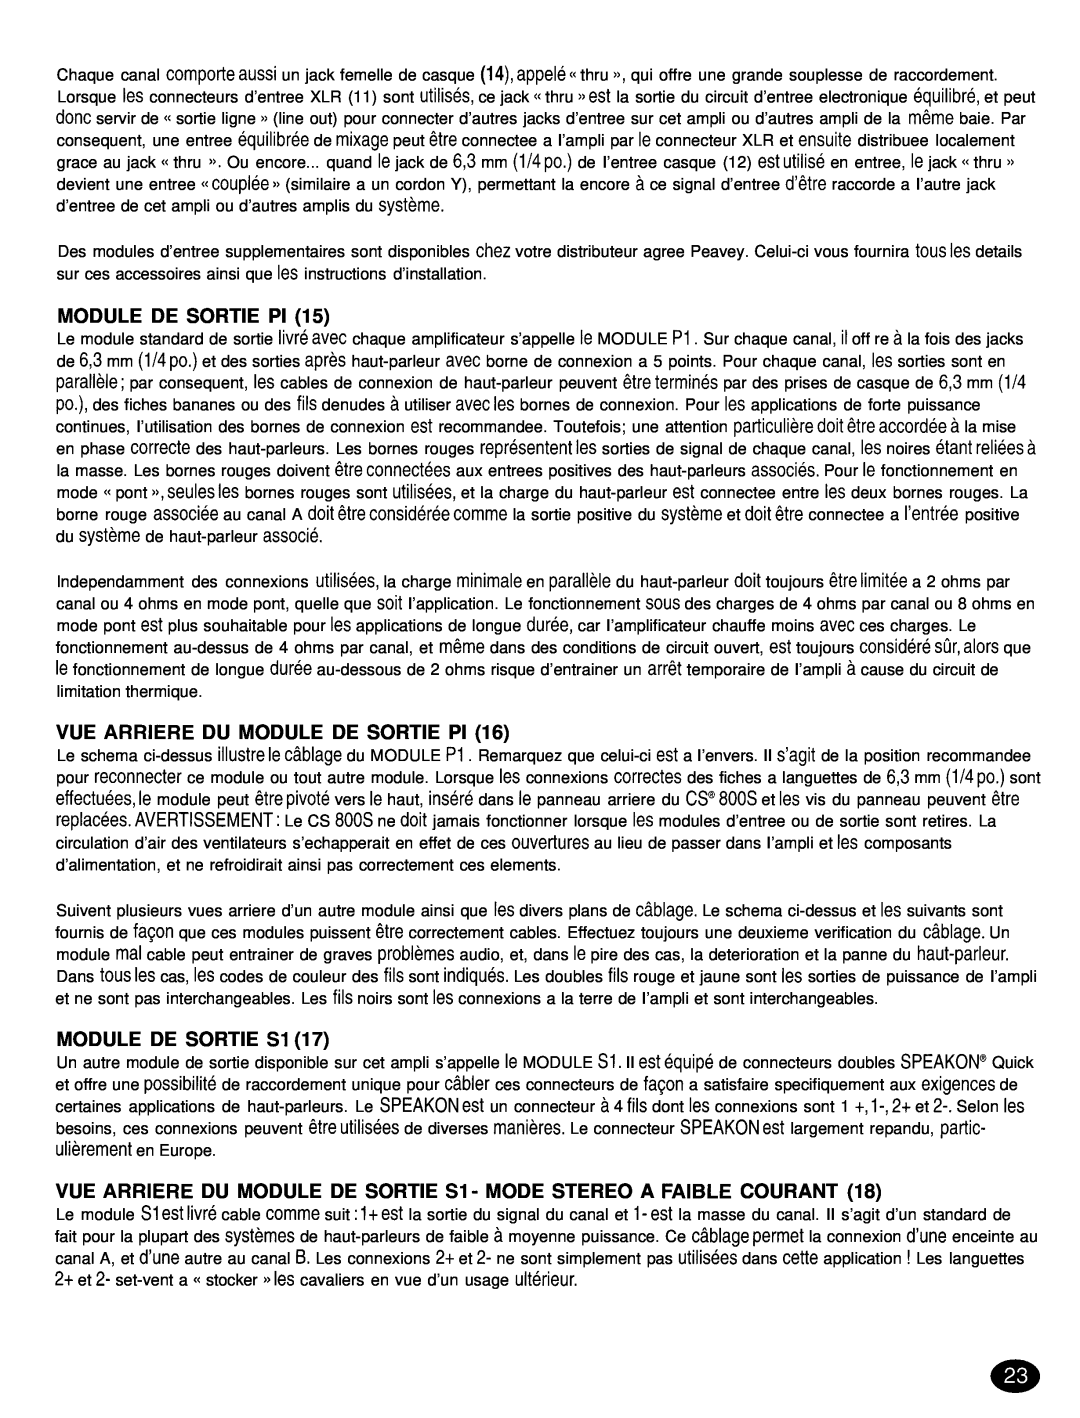 Peavey CS 8OOX manual Vue Arriere Du Module De Sortie Pi, MODULE DE SORTIE Sl 